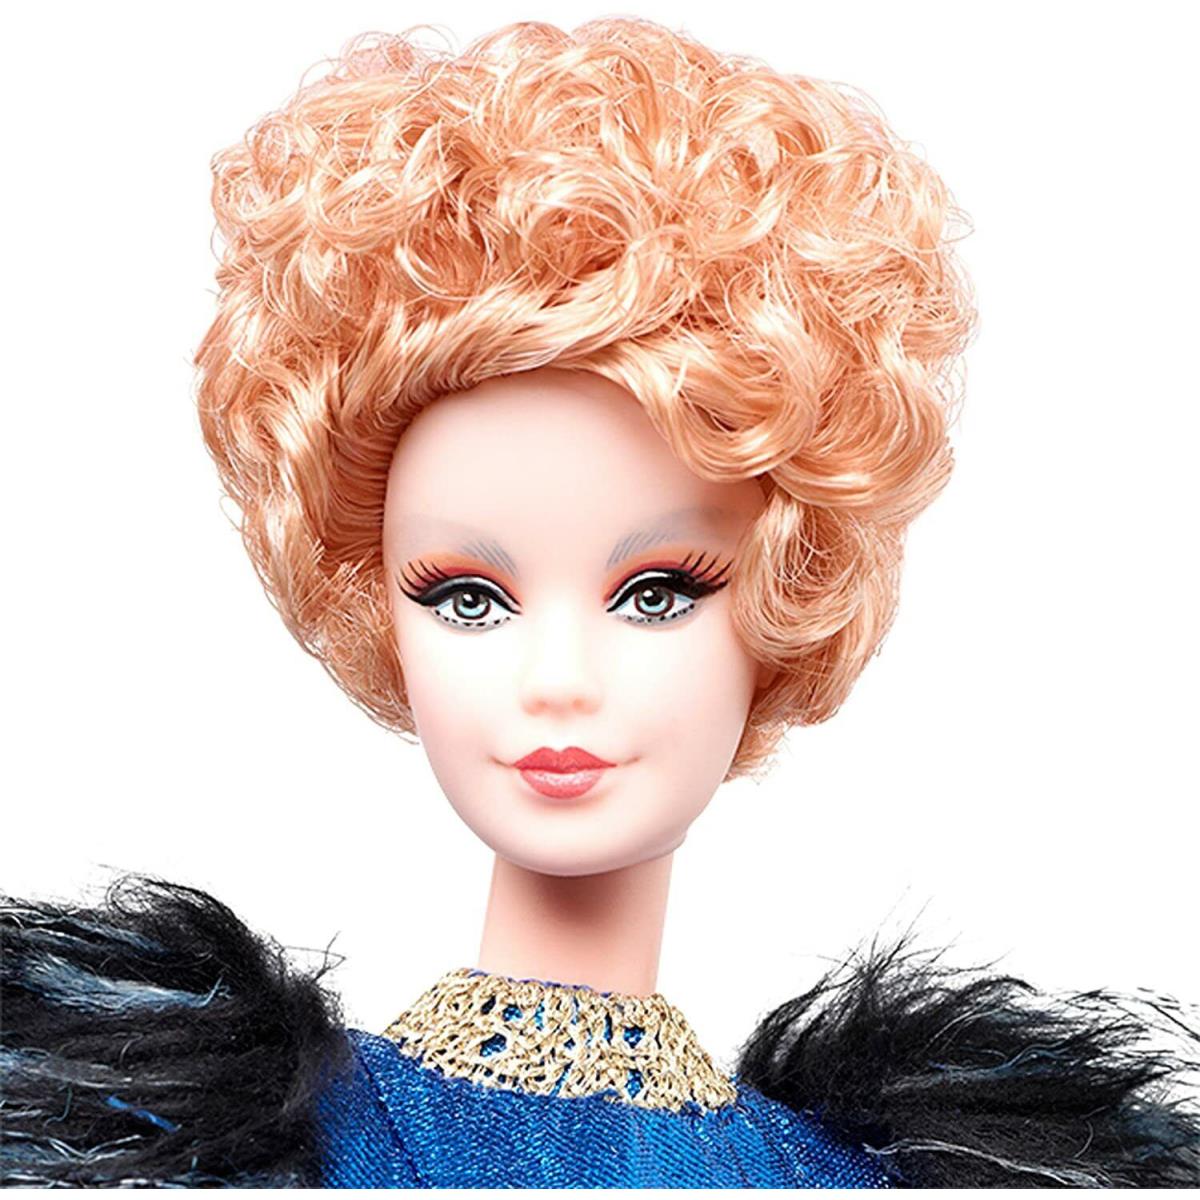 Barbie toy  - Blue Doll Eye, Blonde Doll Hair